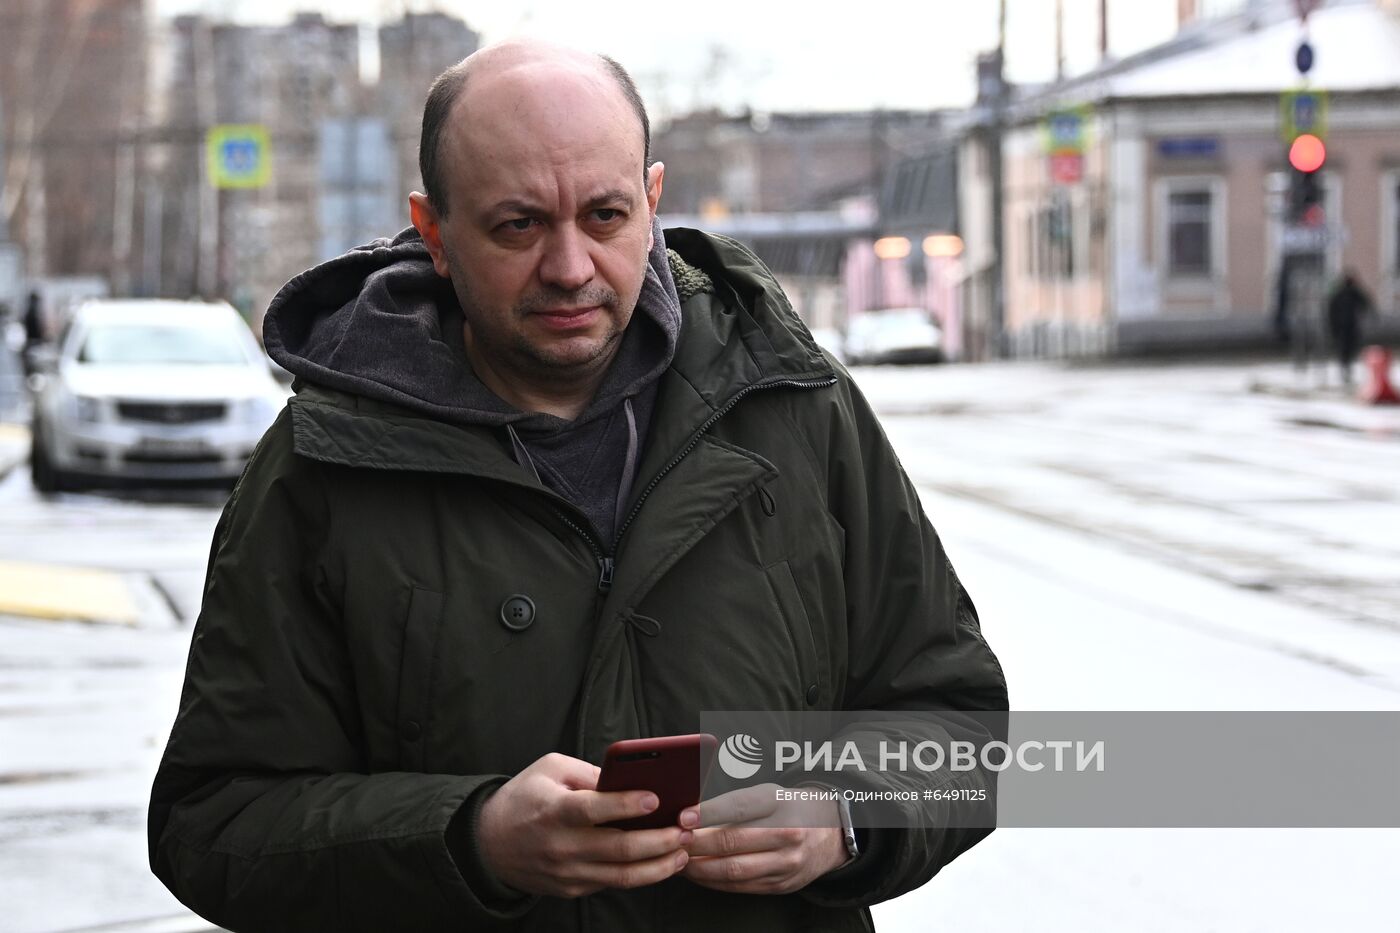 Главный редактор "Медиазоны" С. Смирнов вызван на допрос в СК РФ